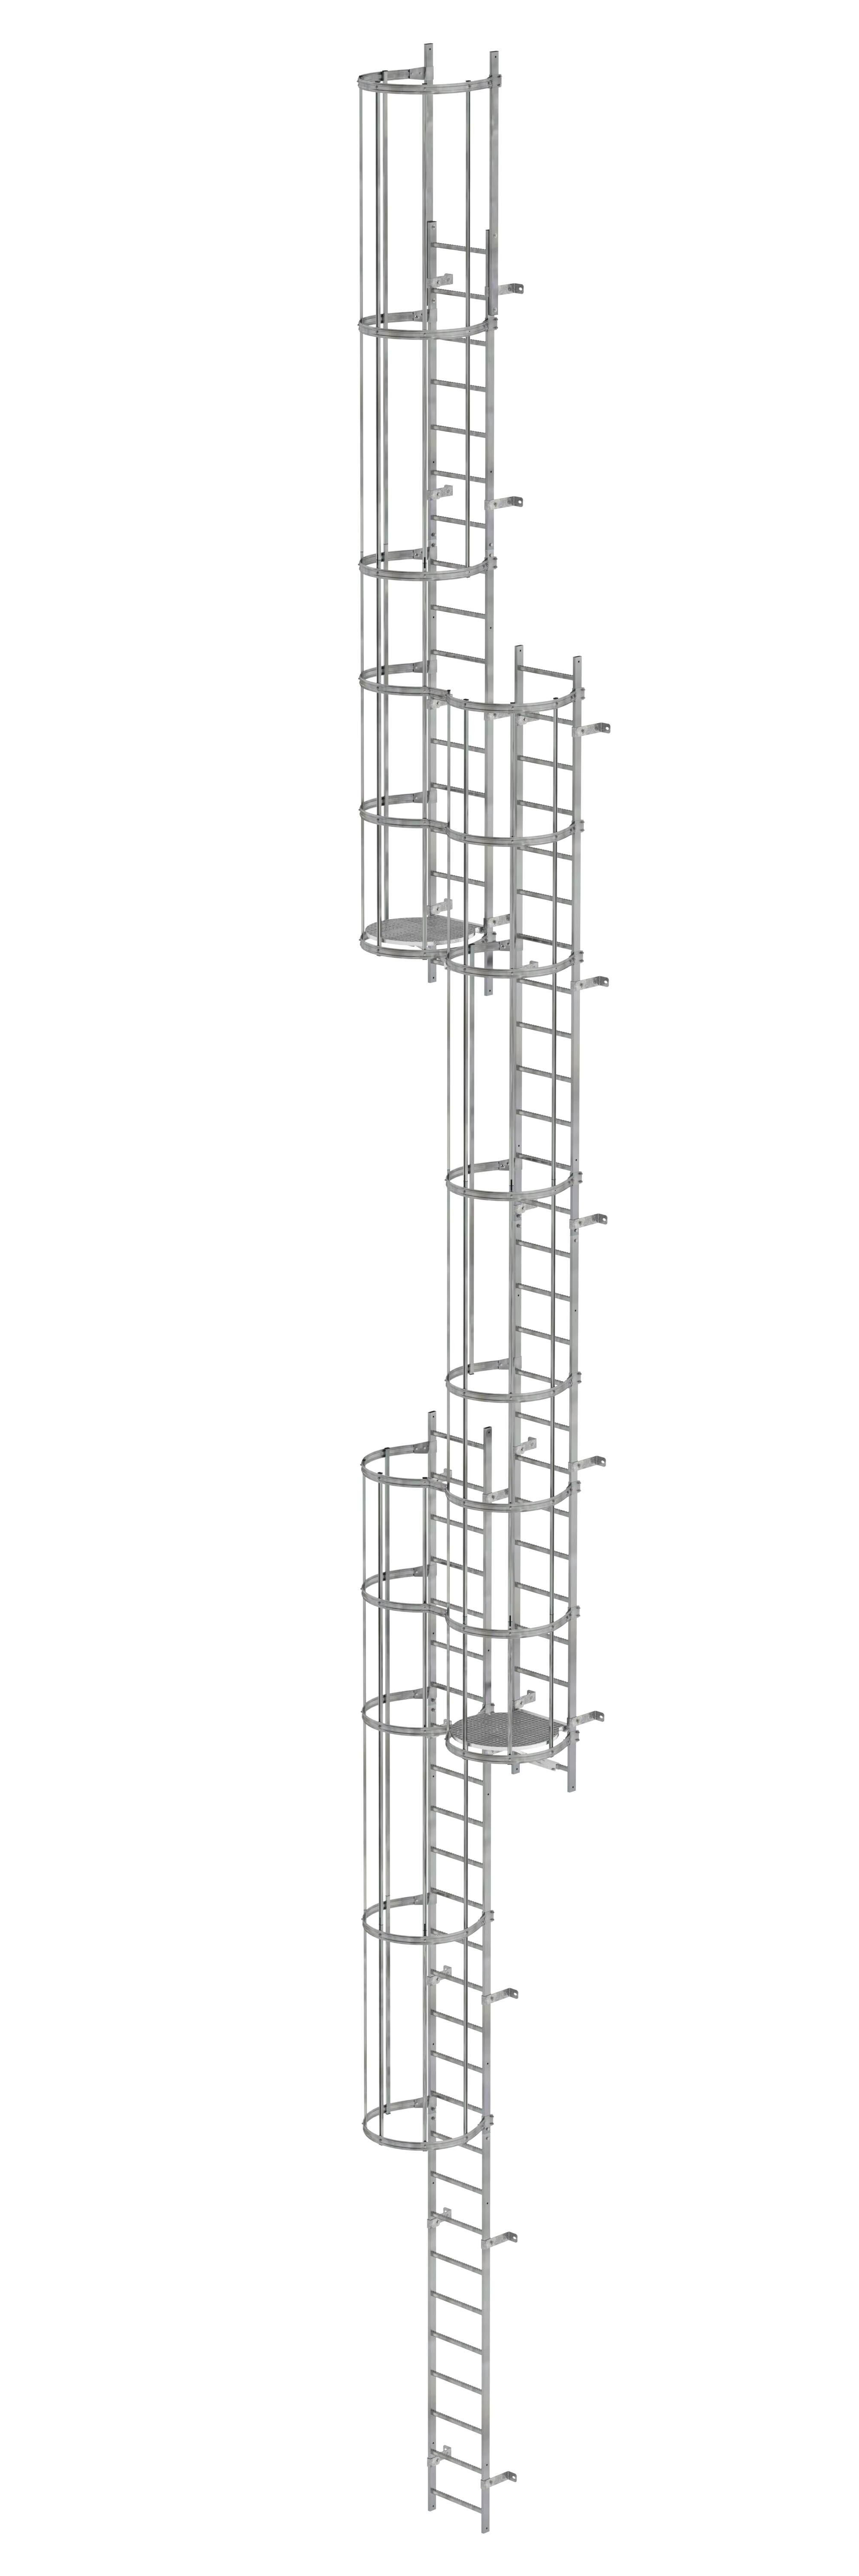 Mehrzügige Steigleiter mit Rückenschutz (Notleiter) Stahl verzinkt 16,32m